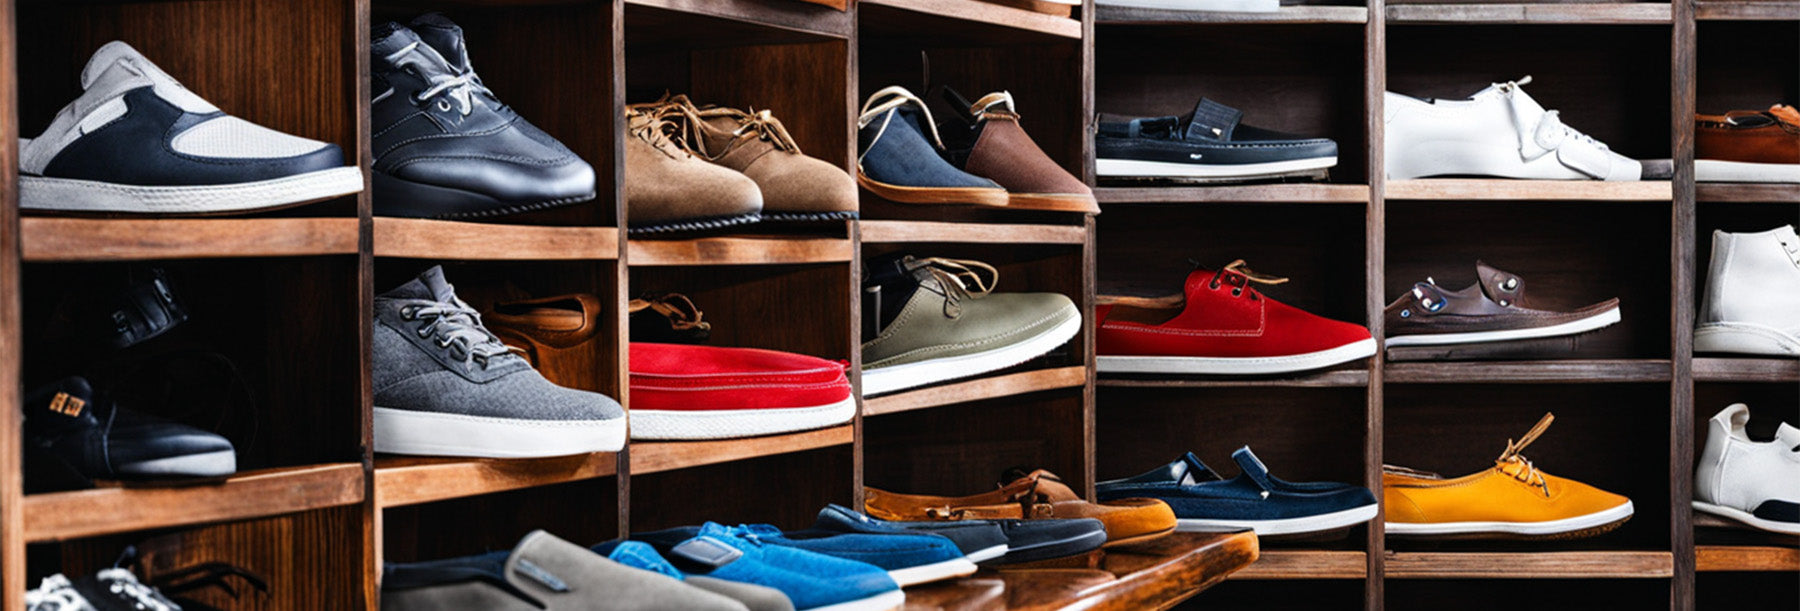 Men's Footwear | Online Shopping at Shopmanzil UAE